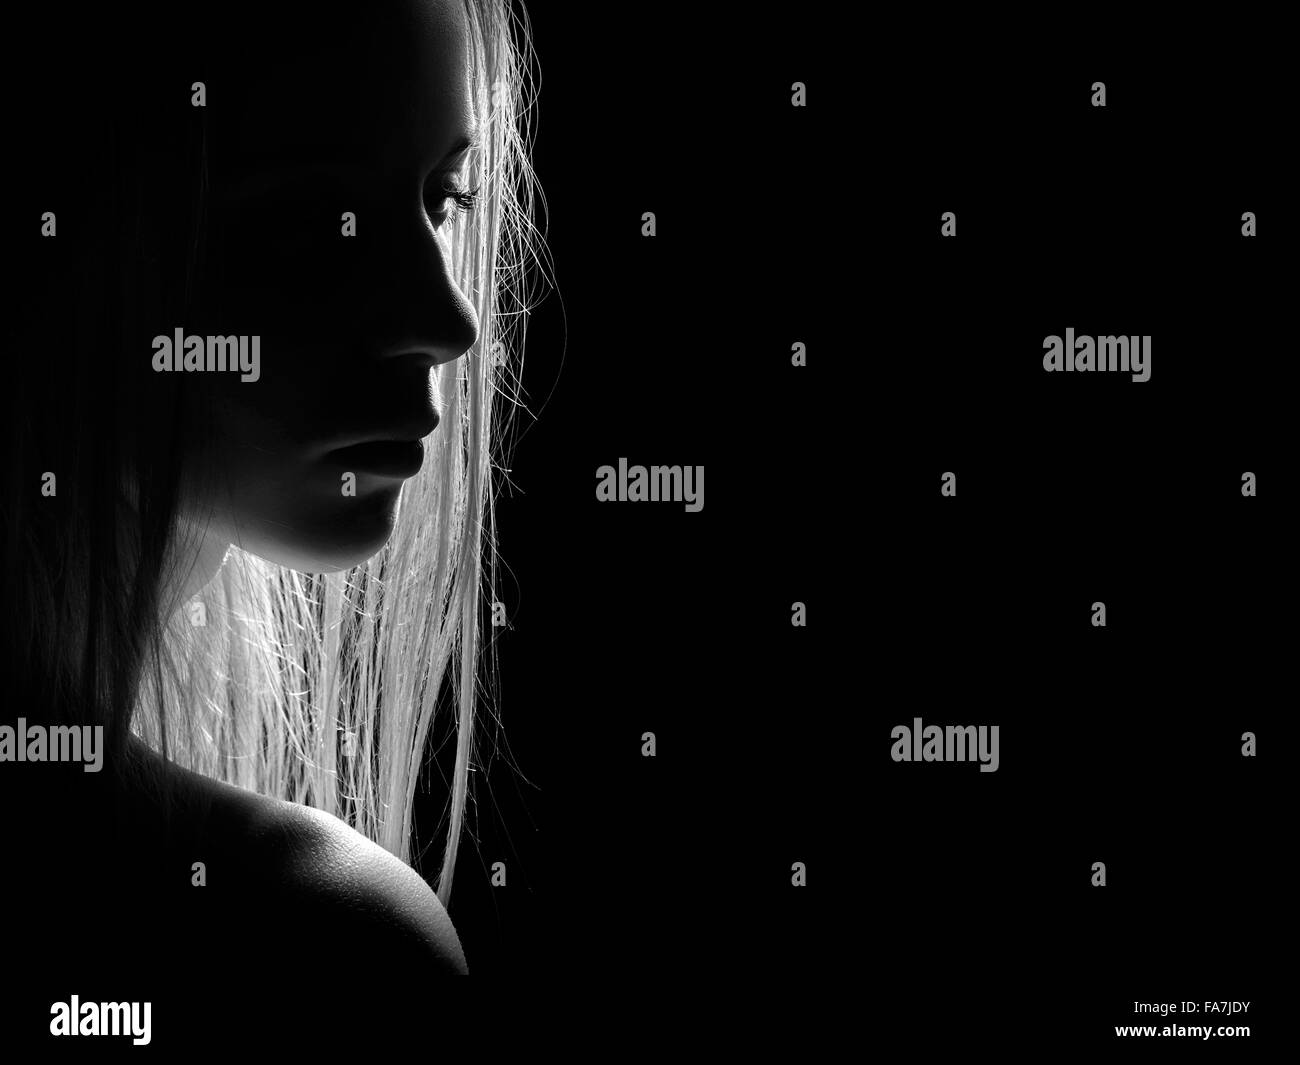 sad female profile silhouette in dark, monochrome image with copyspace Stock Photo